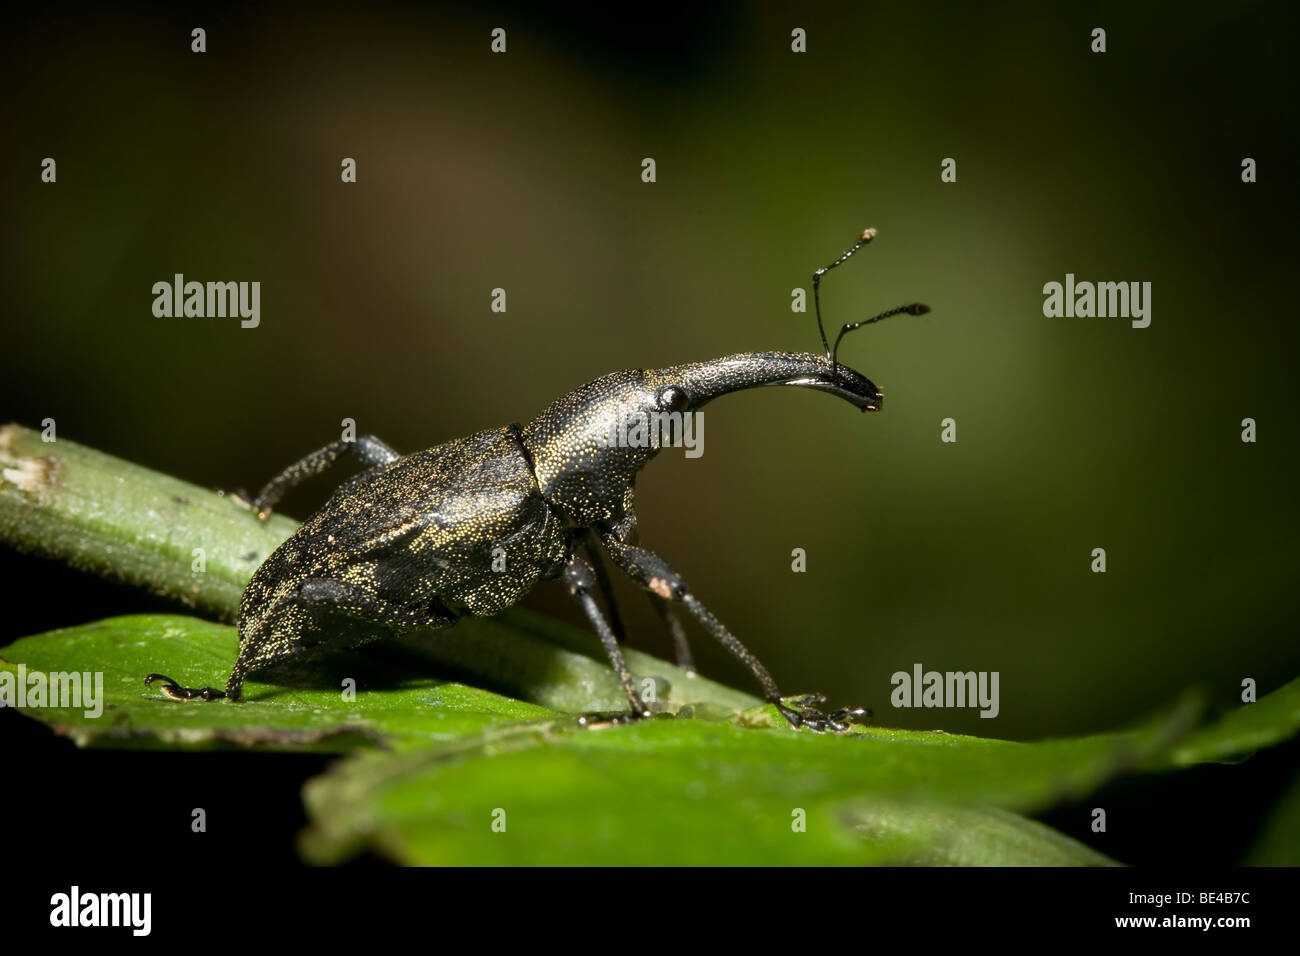 Curculione, ordine Coleoptera, Curculionidae familiari. Fotografato nelle montagne del Costa Rica. Foto Stock